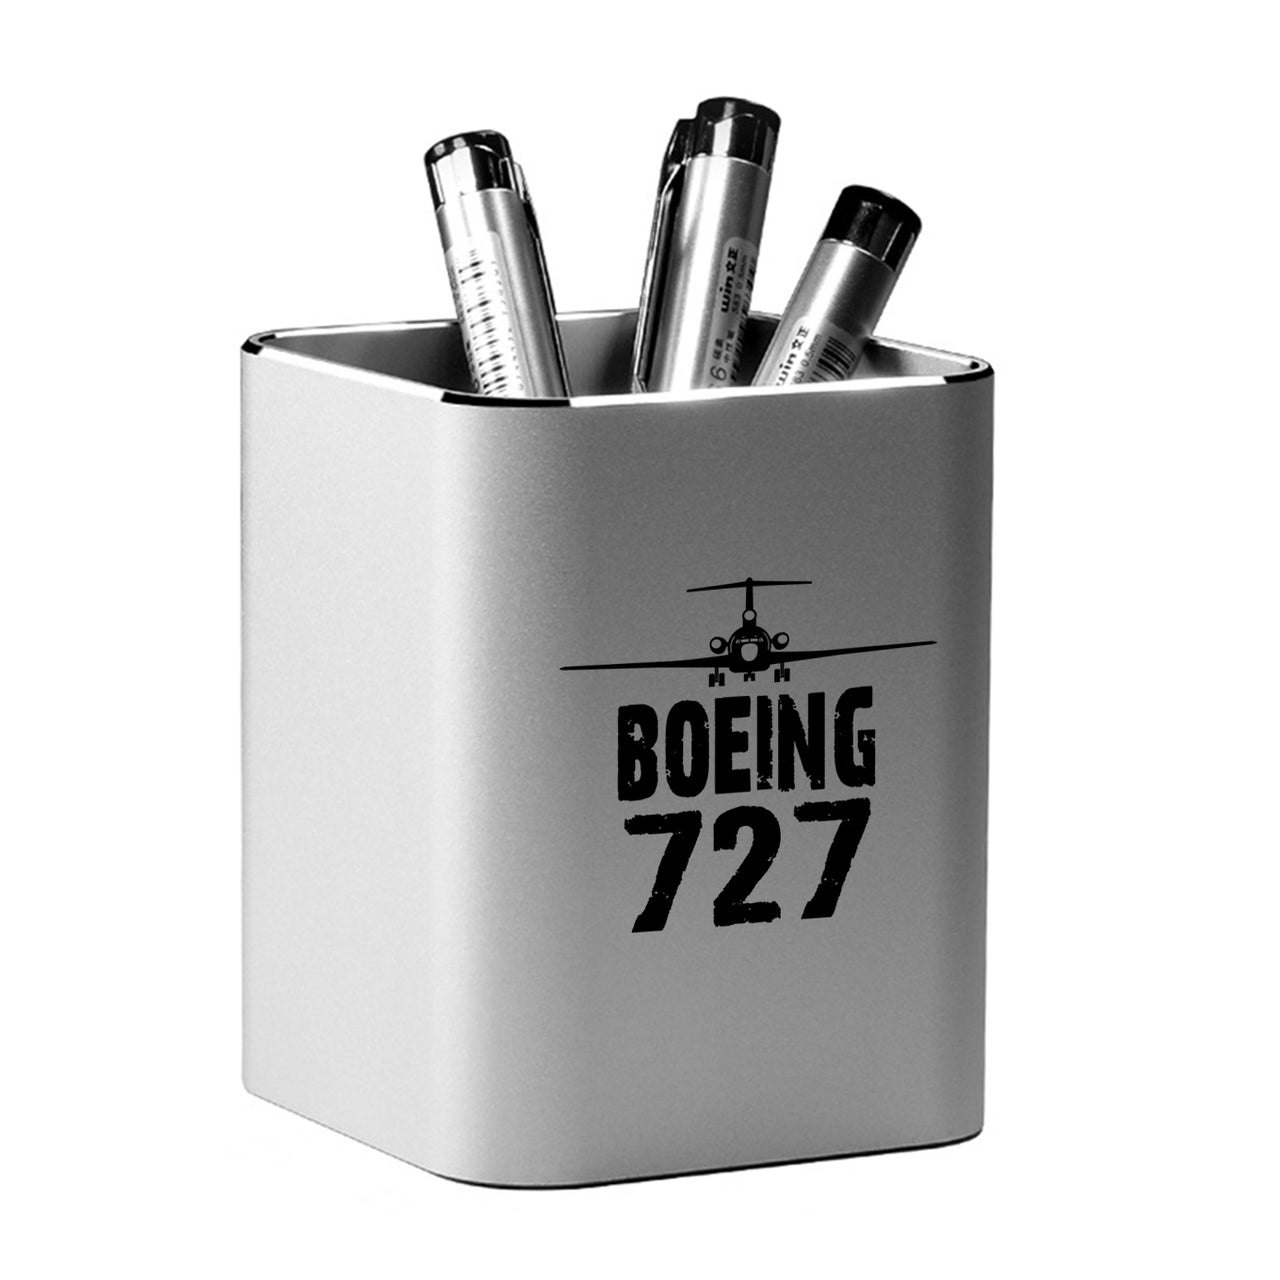 Boeing 727 & Plane Designed Aluminium Alloy Pen Holders